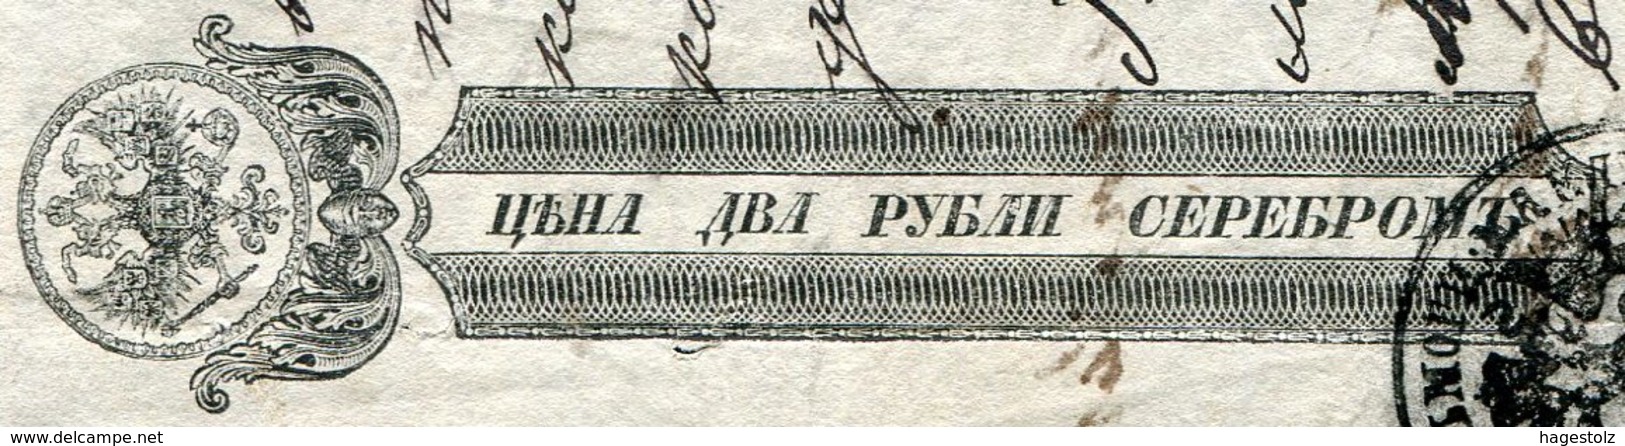 Russia Russland Russie 1866 Bill Of Exchange Wechsel 2 Rub. (301-900 R.) Revenue Stamped Paper Fiscal Tax Stempelpapier - Bills Of Exchange